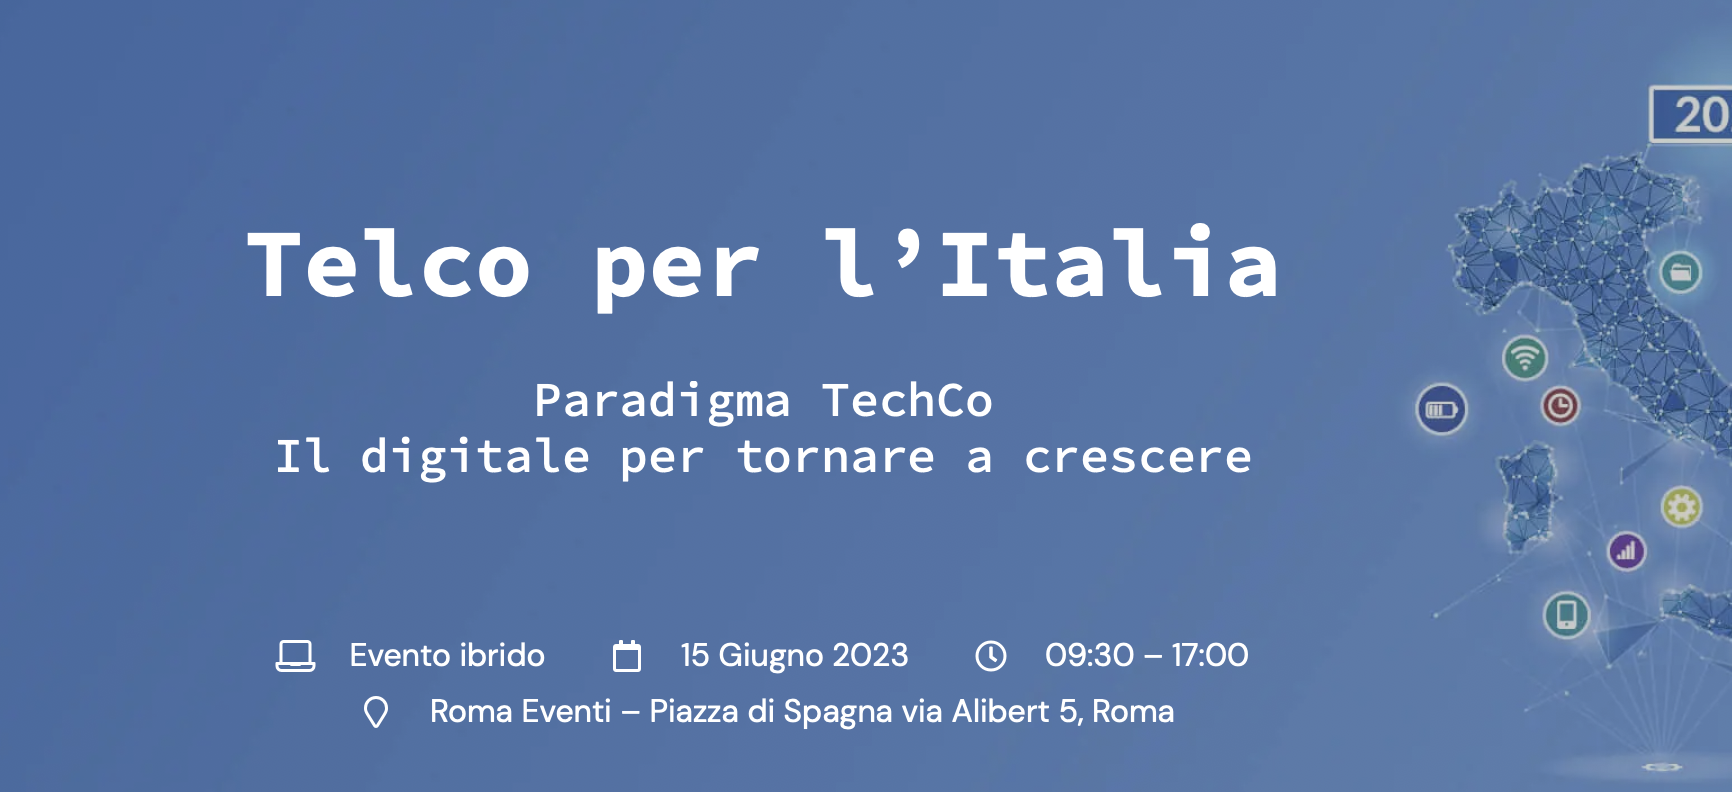 Telco per l’Italia - Paradigma TechCo. Il digitale per tornare a crescere